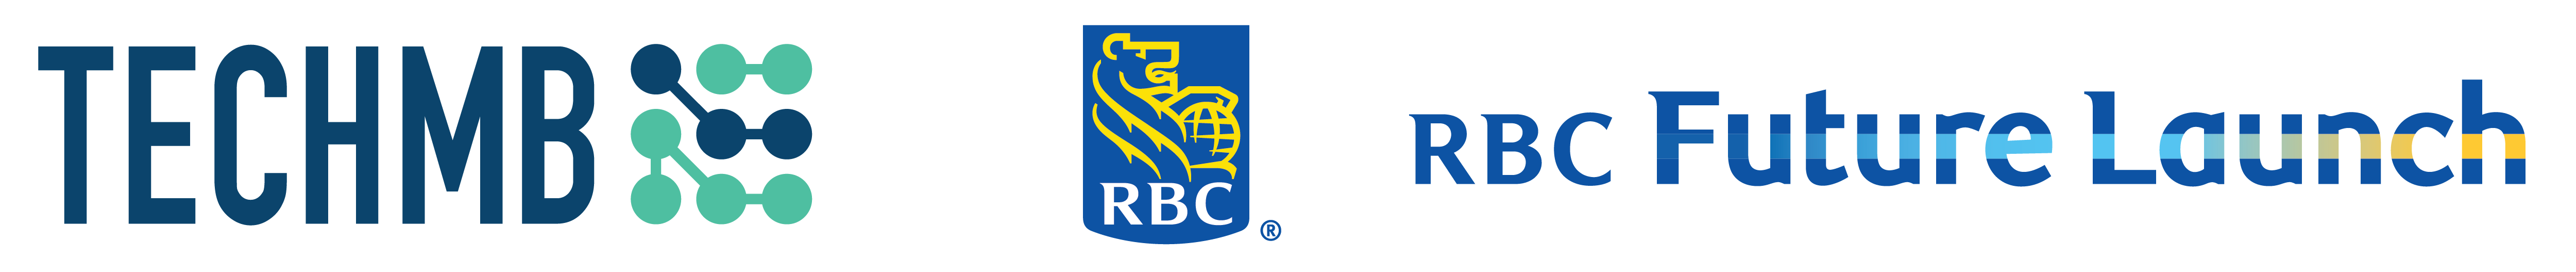 Tech Manitoba and RBC Future Launch